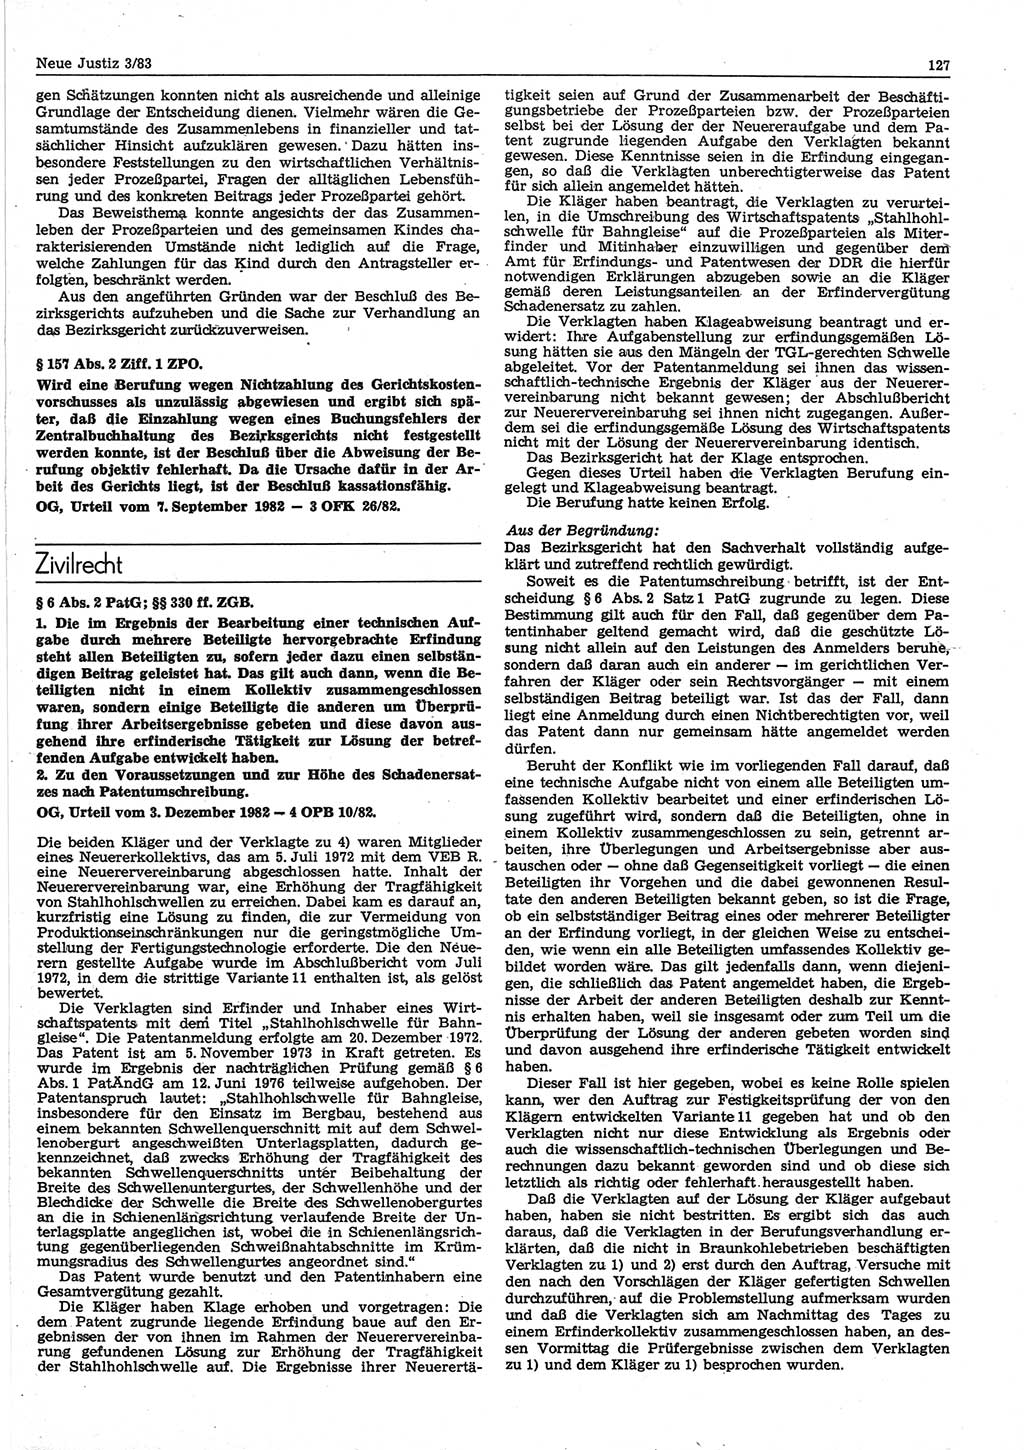 Neue Justiz (NJ), Zeitschrift für sozialistisches Recht und Gesetzlichkeit [Deutsche Demokratische Republik (DDR)], 37. Jahrgang 1983, Seite 127 (NJ DDR 1983, S. 127)